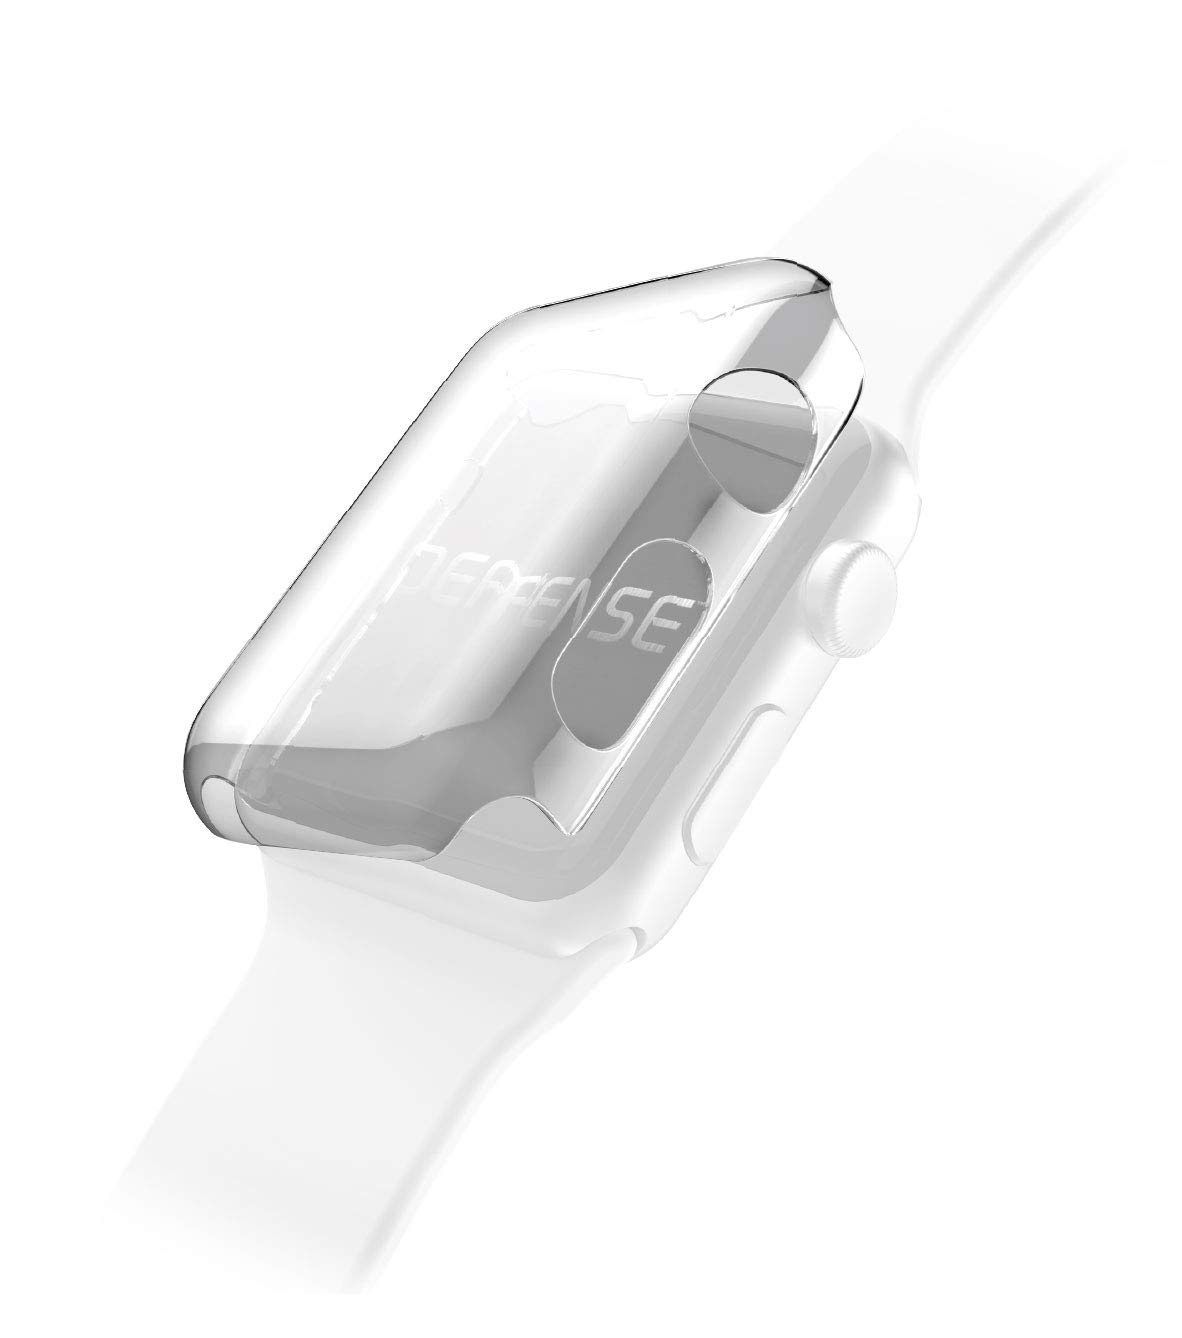 Ốp viền chống sốc Apple Watch Raptic 360X Protective Case 40mm trong suốt - Hàng chính hãng